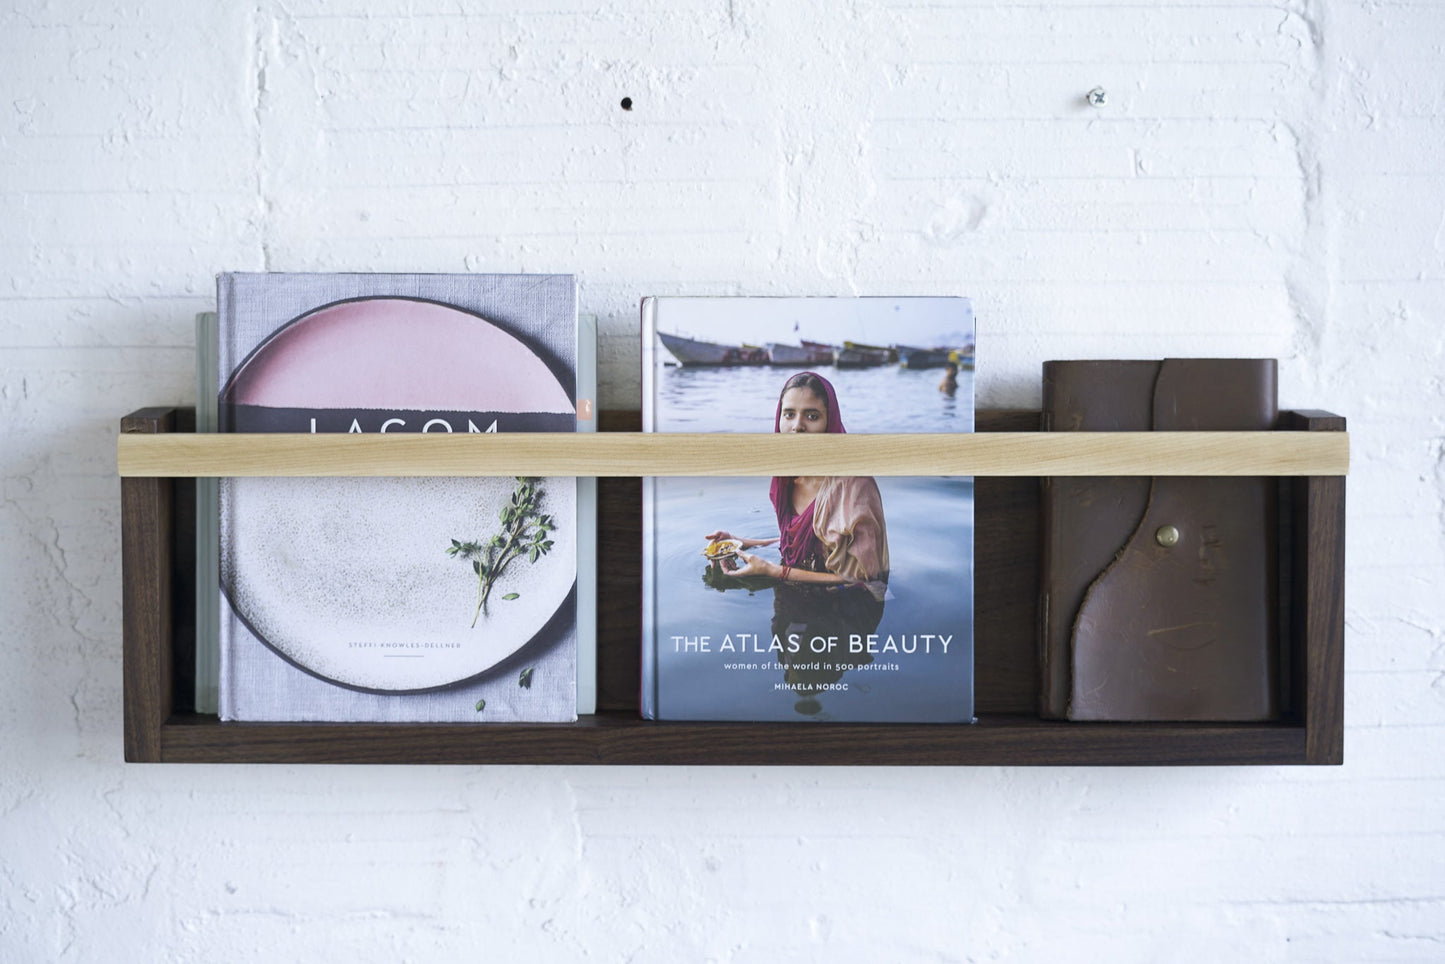 Organiza tus revistas y discos de forma ordenada y accesible con esta estantería de pared, Kaimok Design